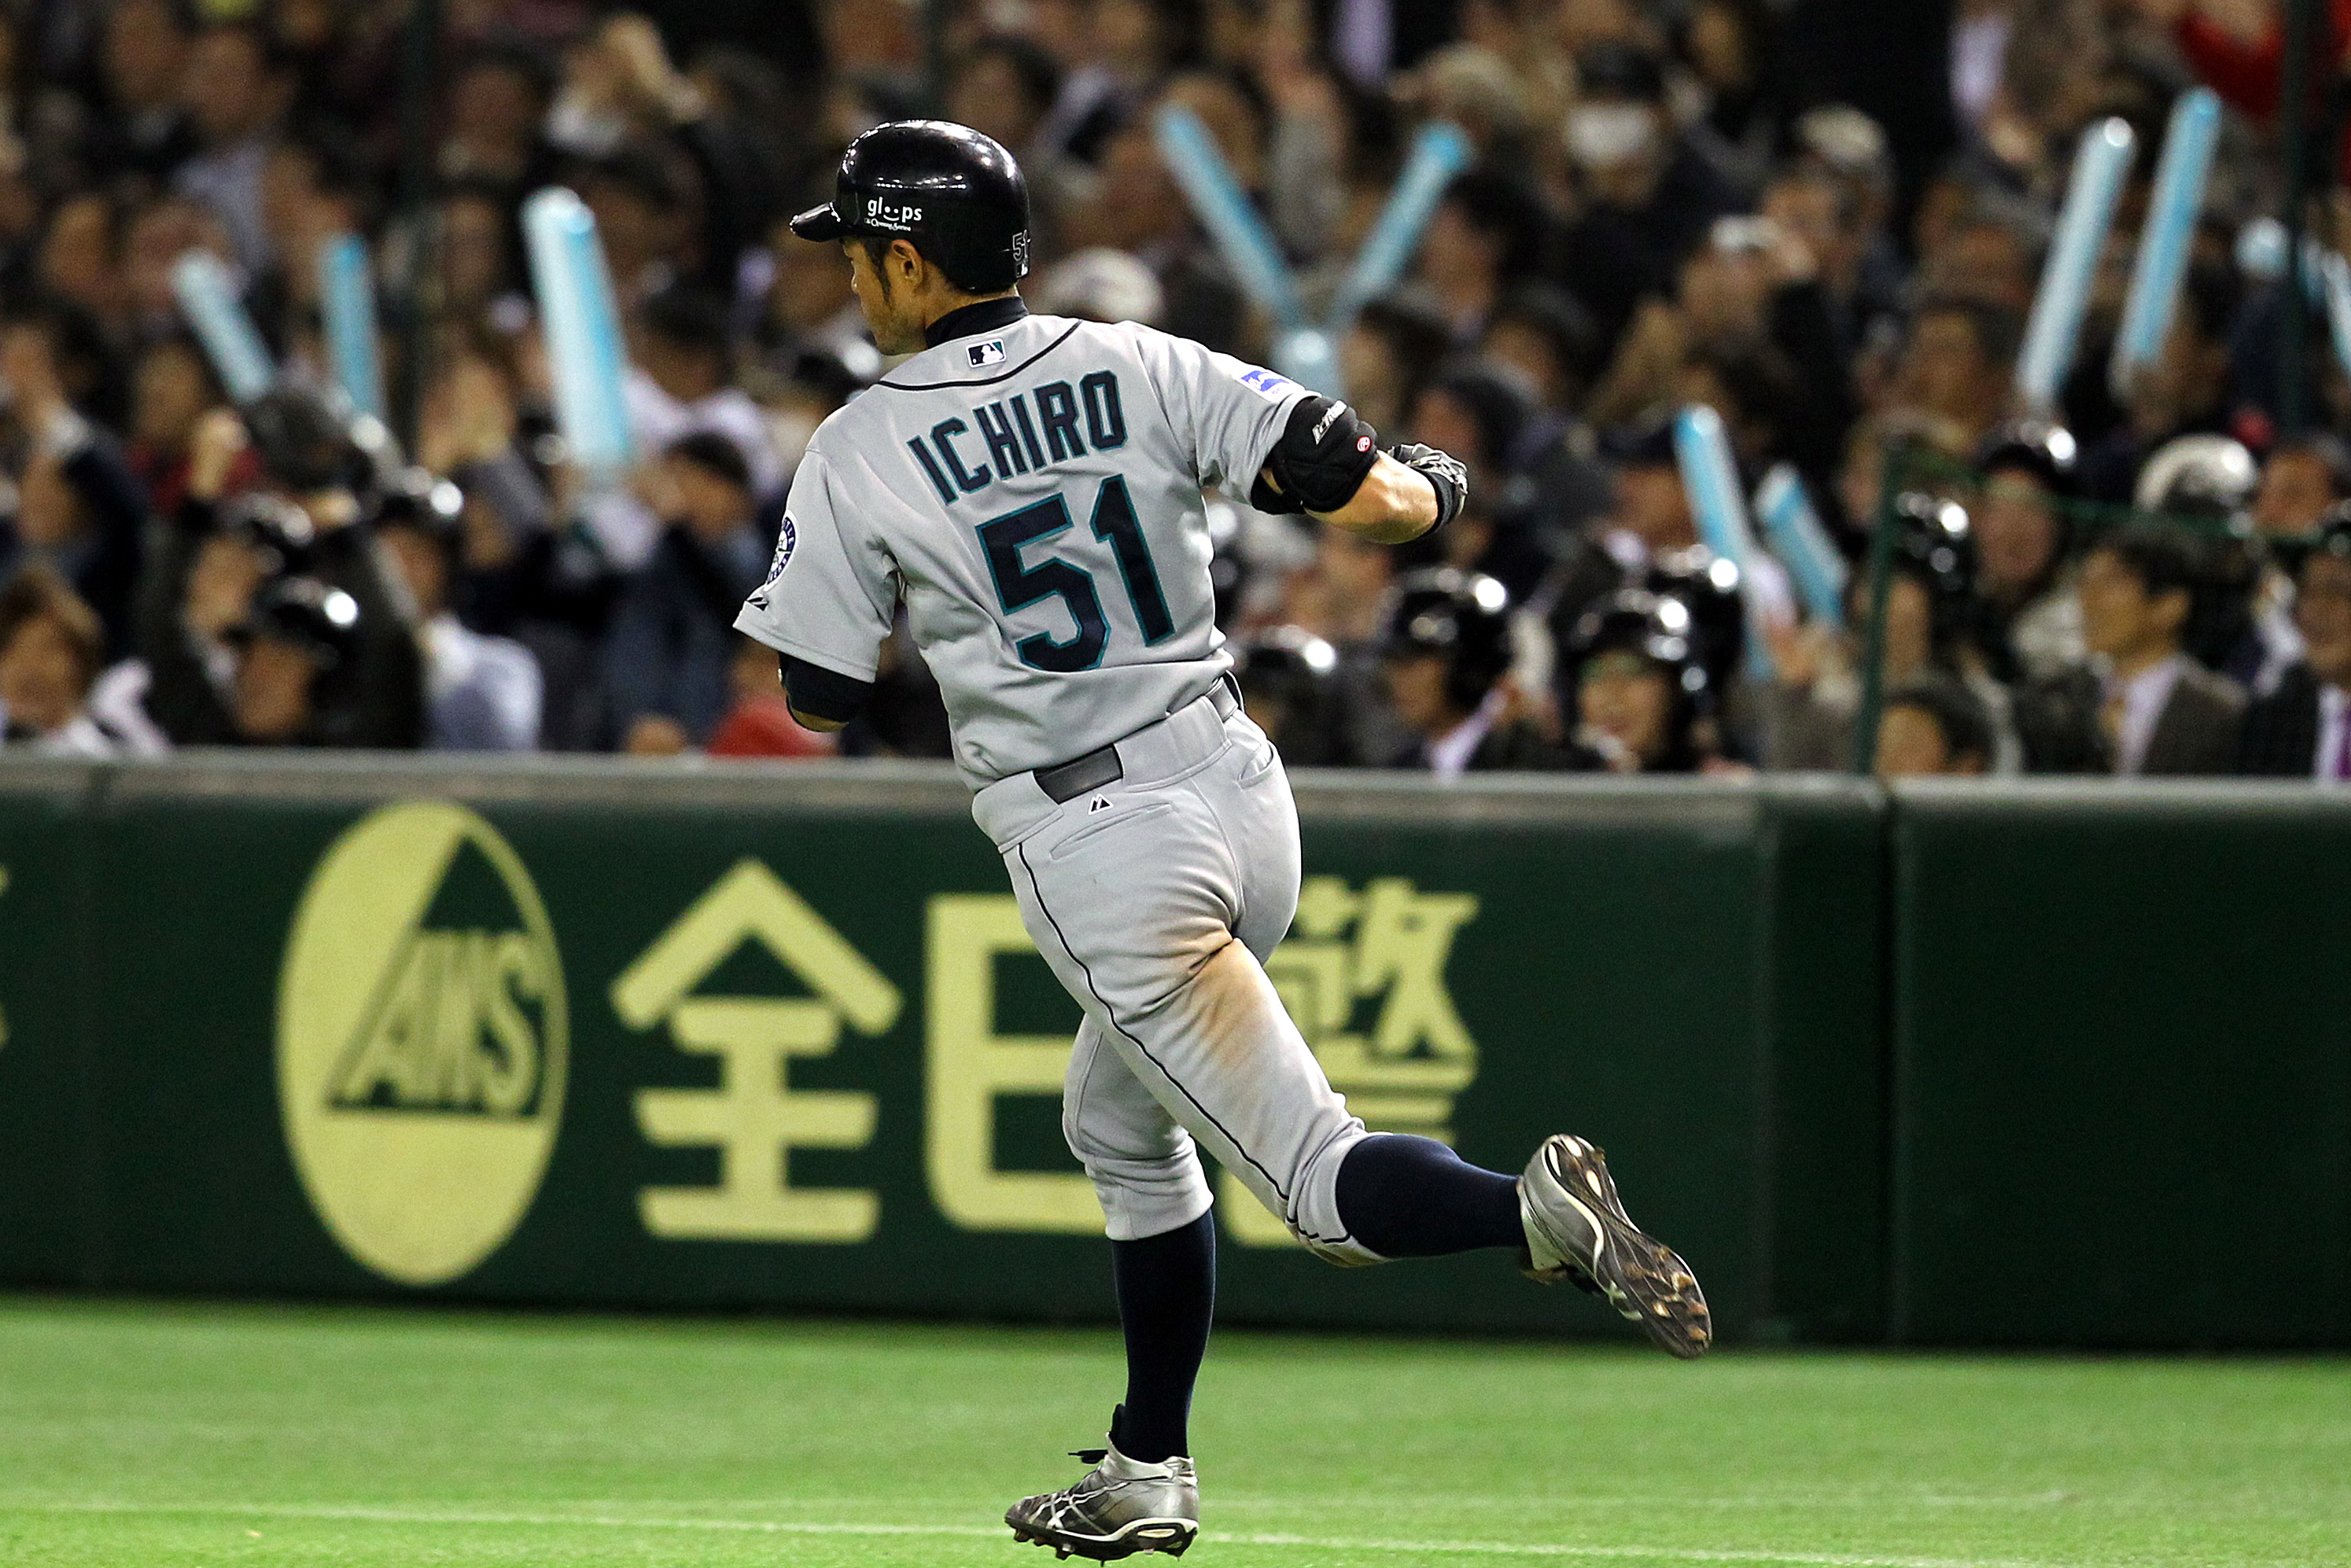 Ichiro Suzuki's Last Game (Mariners vs. Athletics, 3/21/19)